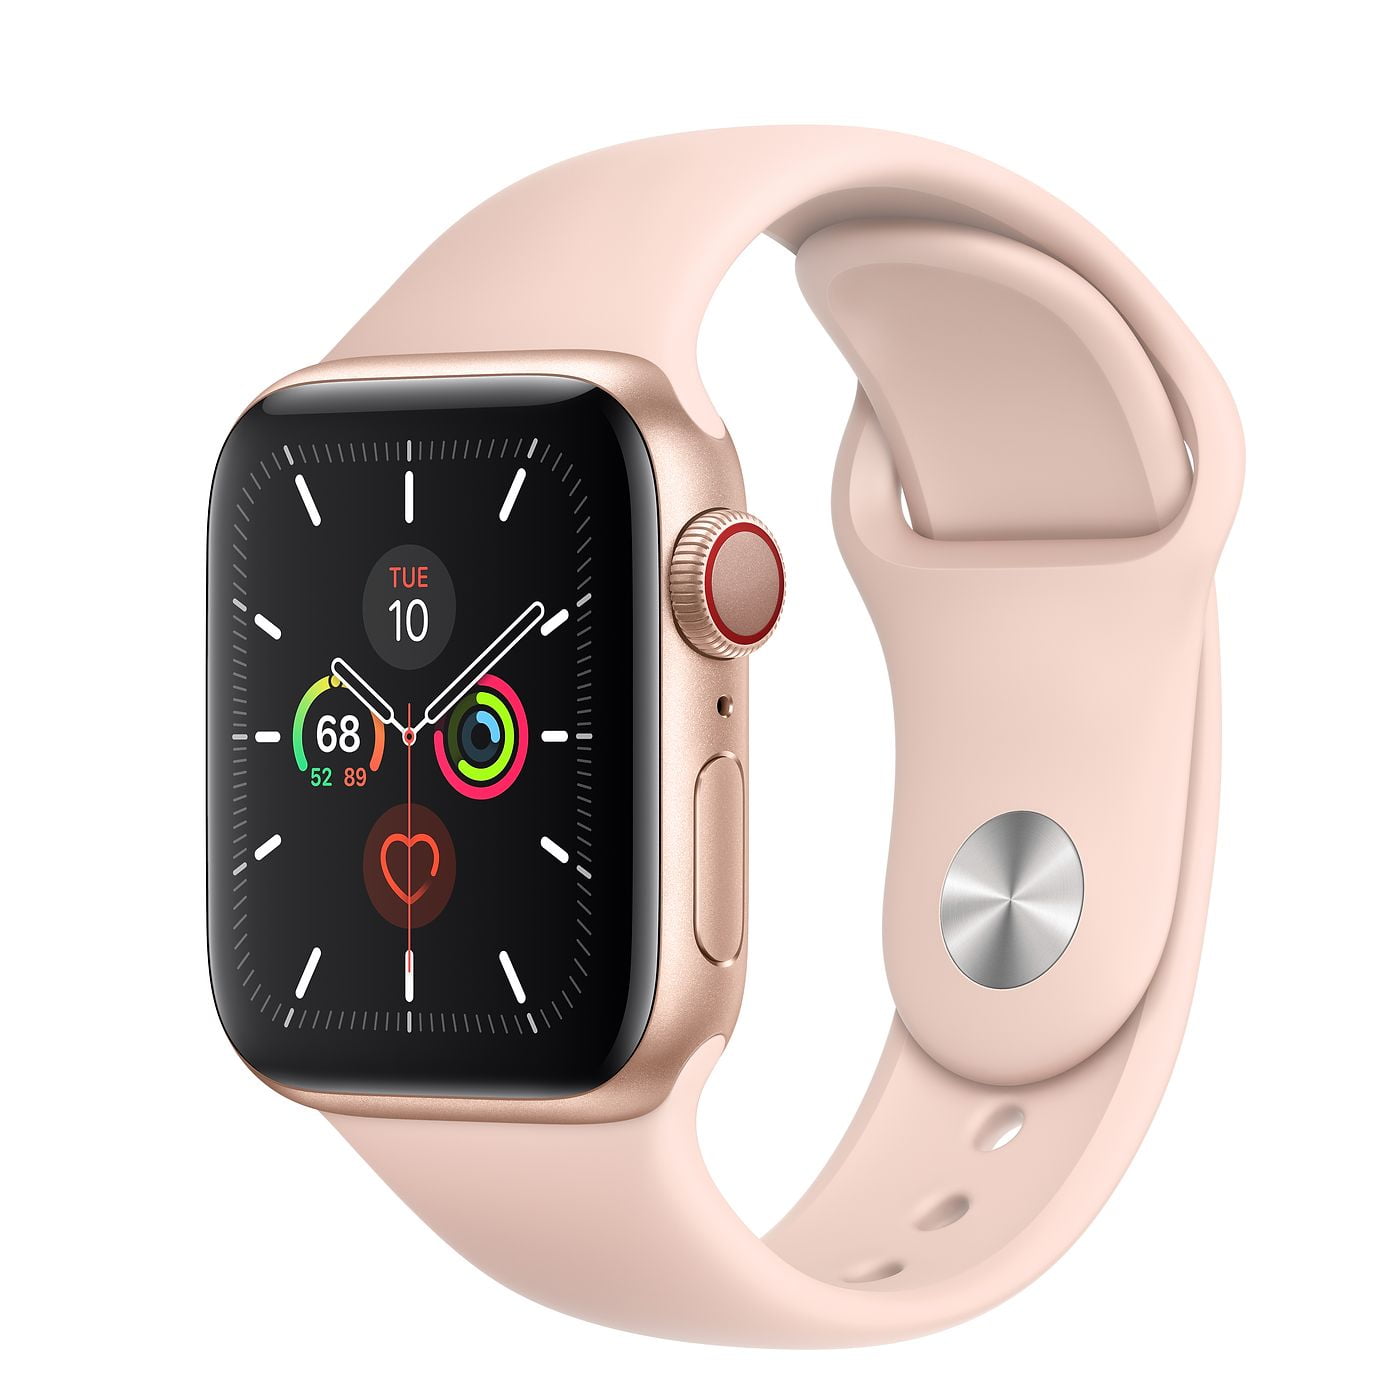 Weglaten Laat je zien Seminarie Apple Watch Series 5 (GPS, 40mm) - Space Gray Aluminum Case with Black  Sport Band - Walmart.com